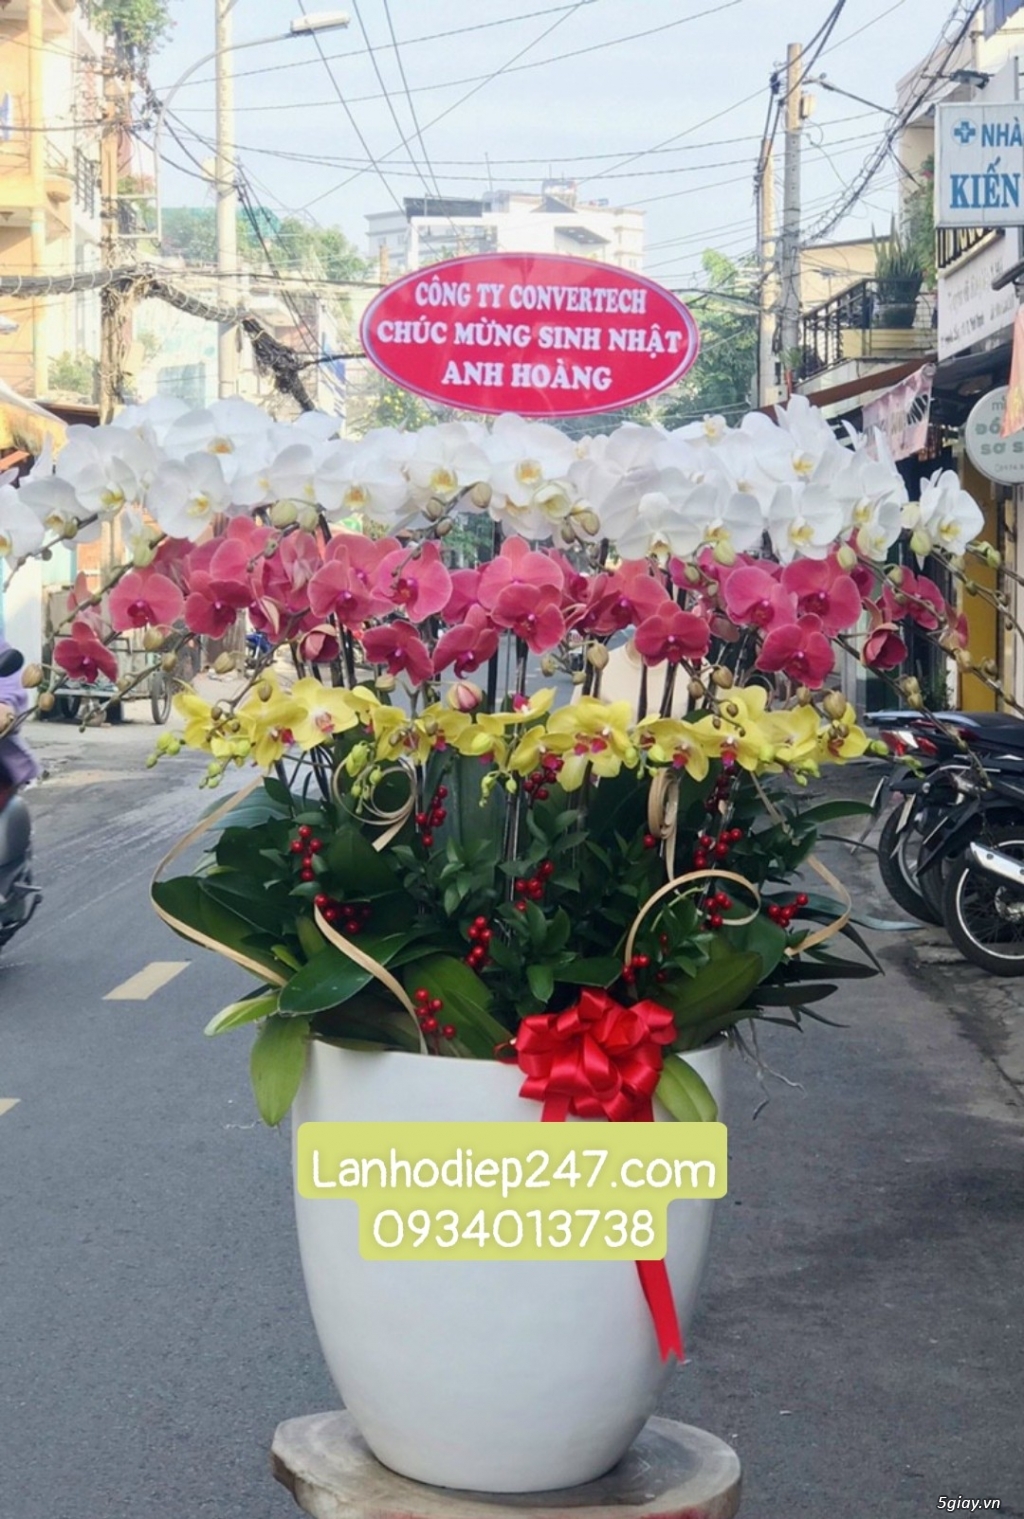 Tư vấn bí quyết tặng hoa theo phong thủy từ Shop Hoa Lan TPHCM 247 - 2